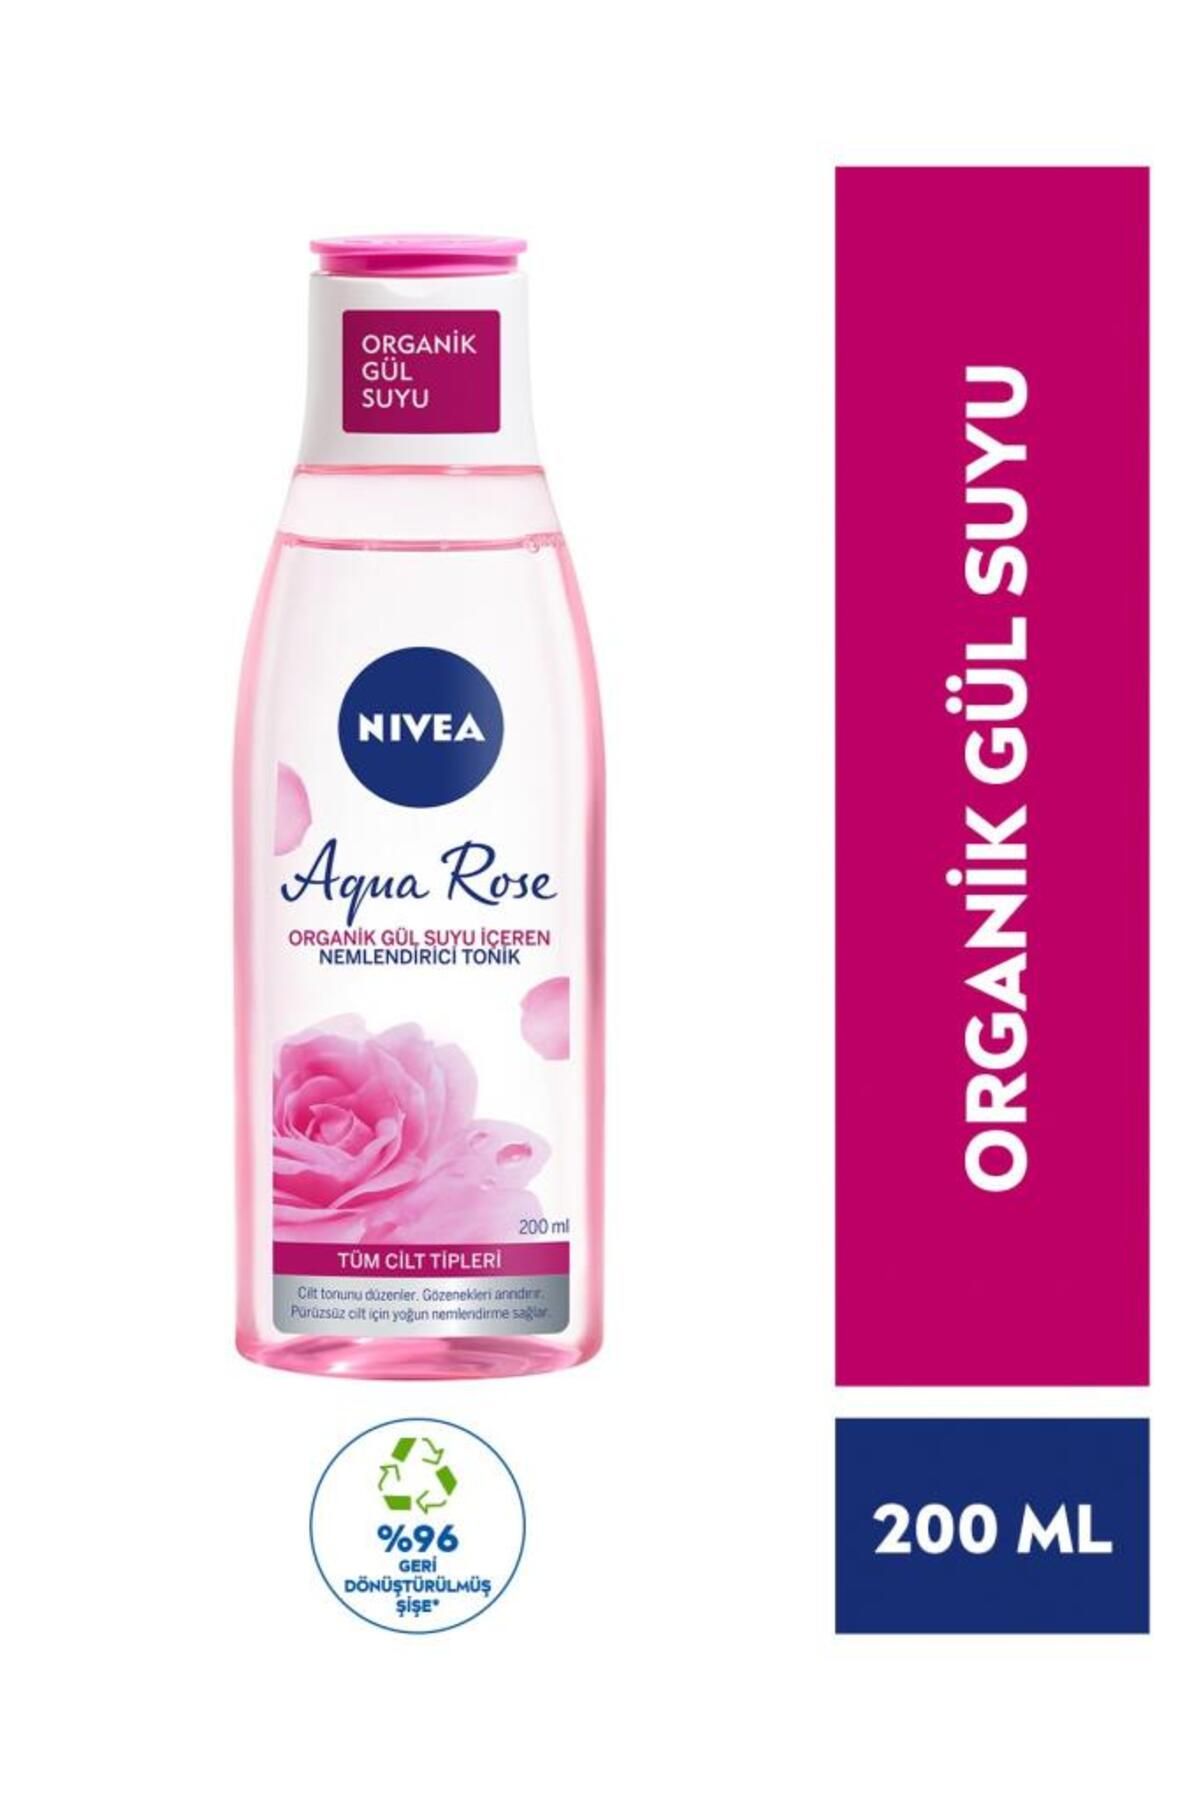 NIVEA Aqua Rose Nemlendirici Tonik 200 ml